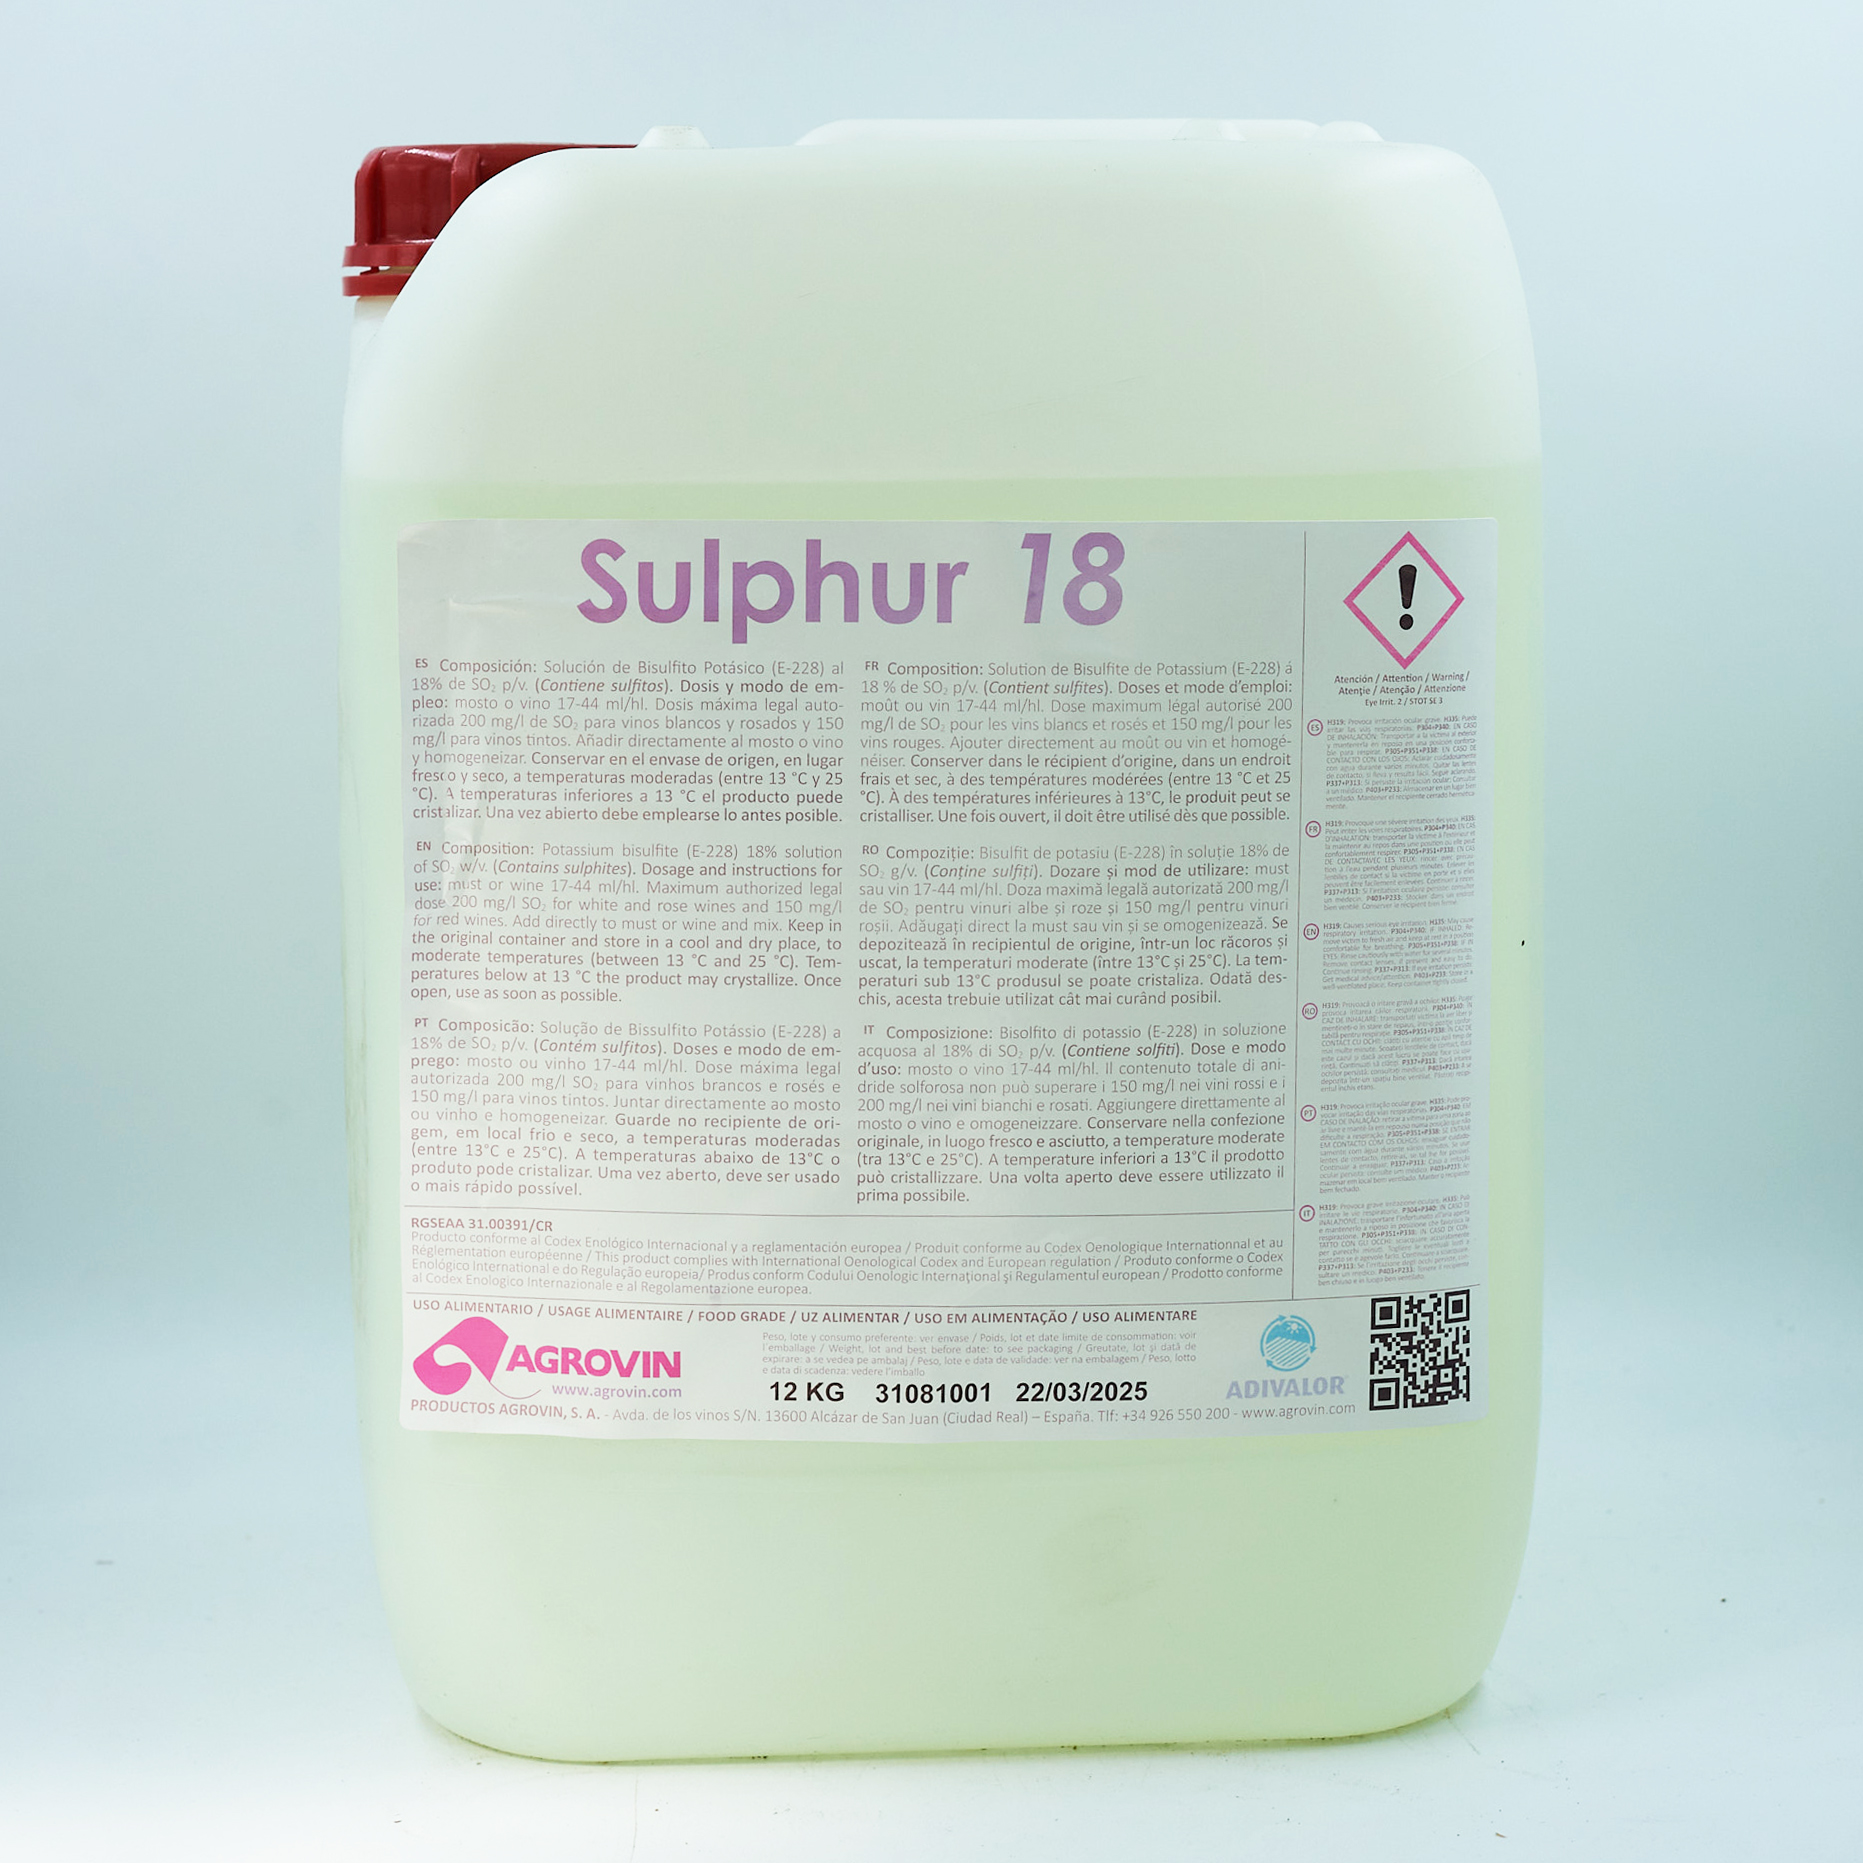 Sulphur 18